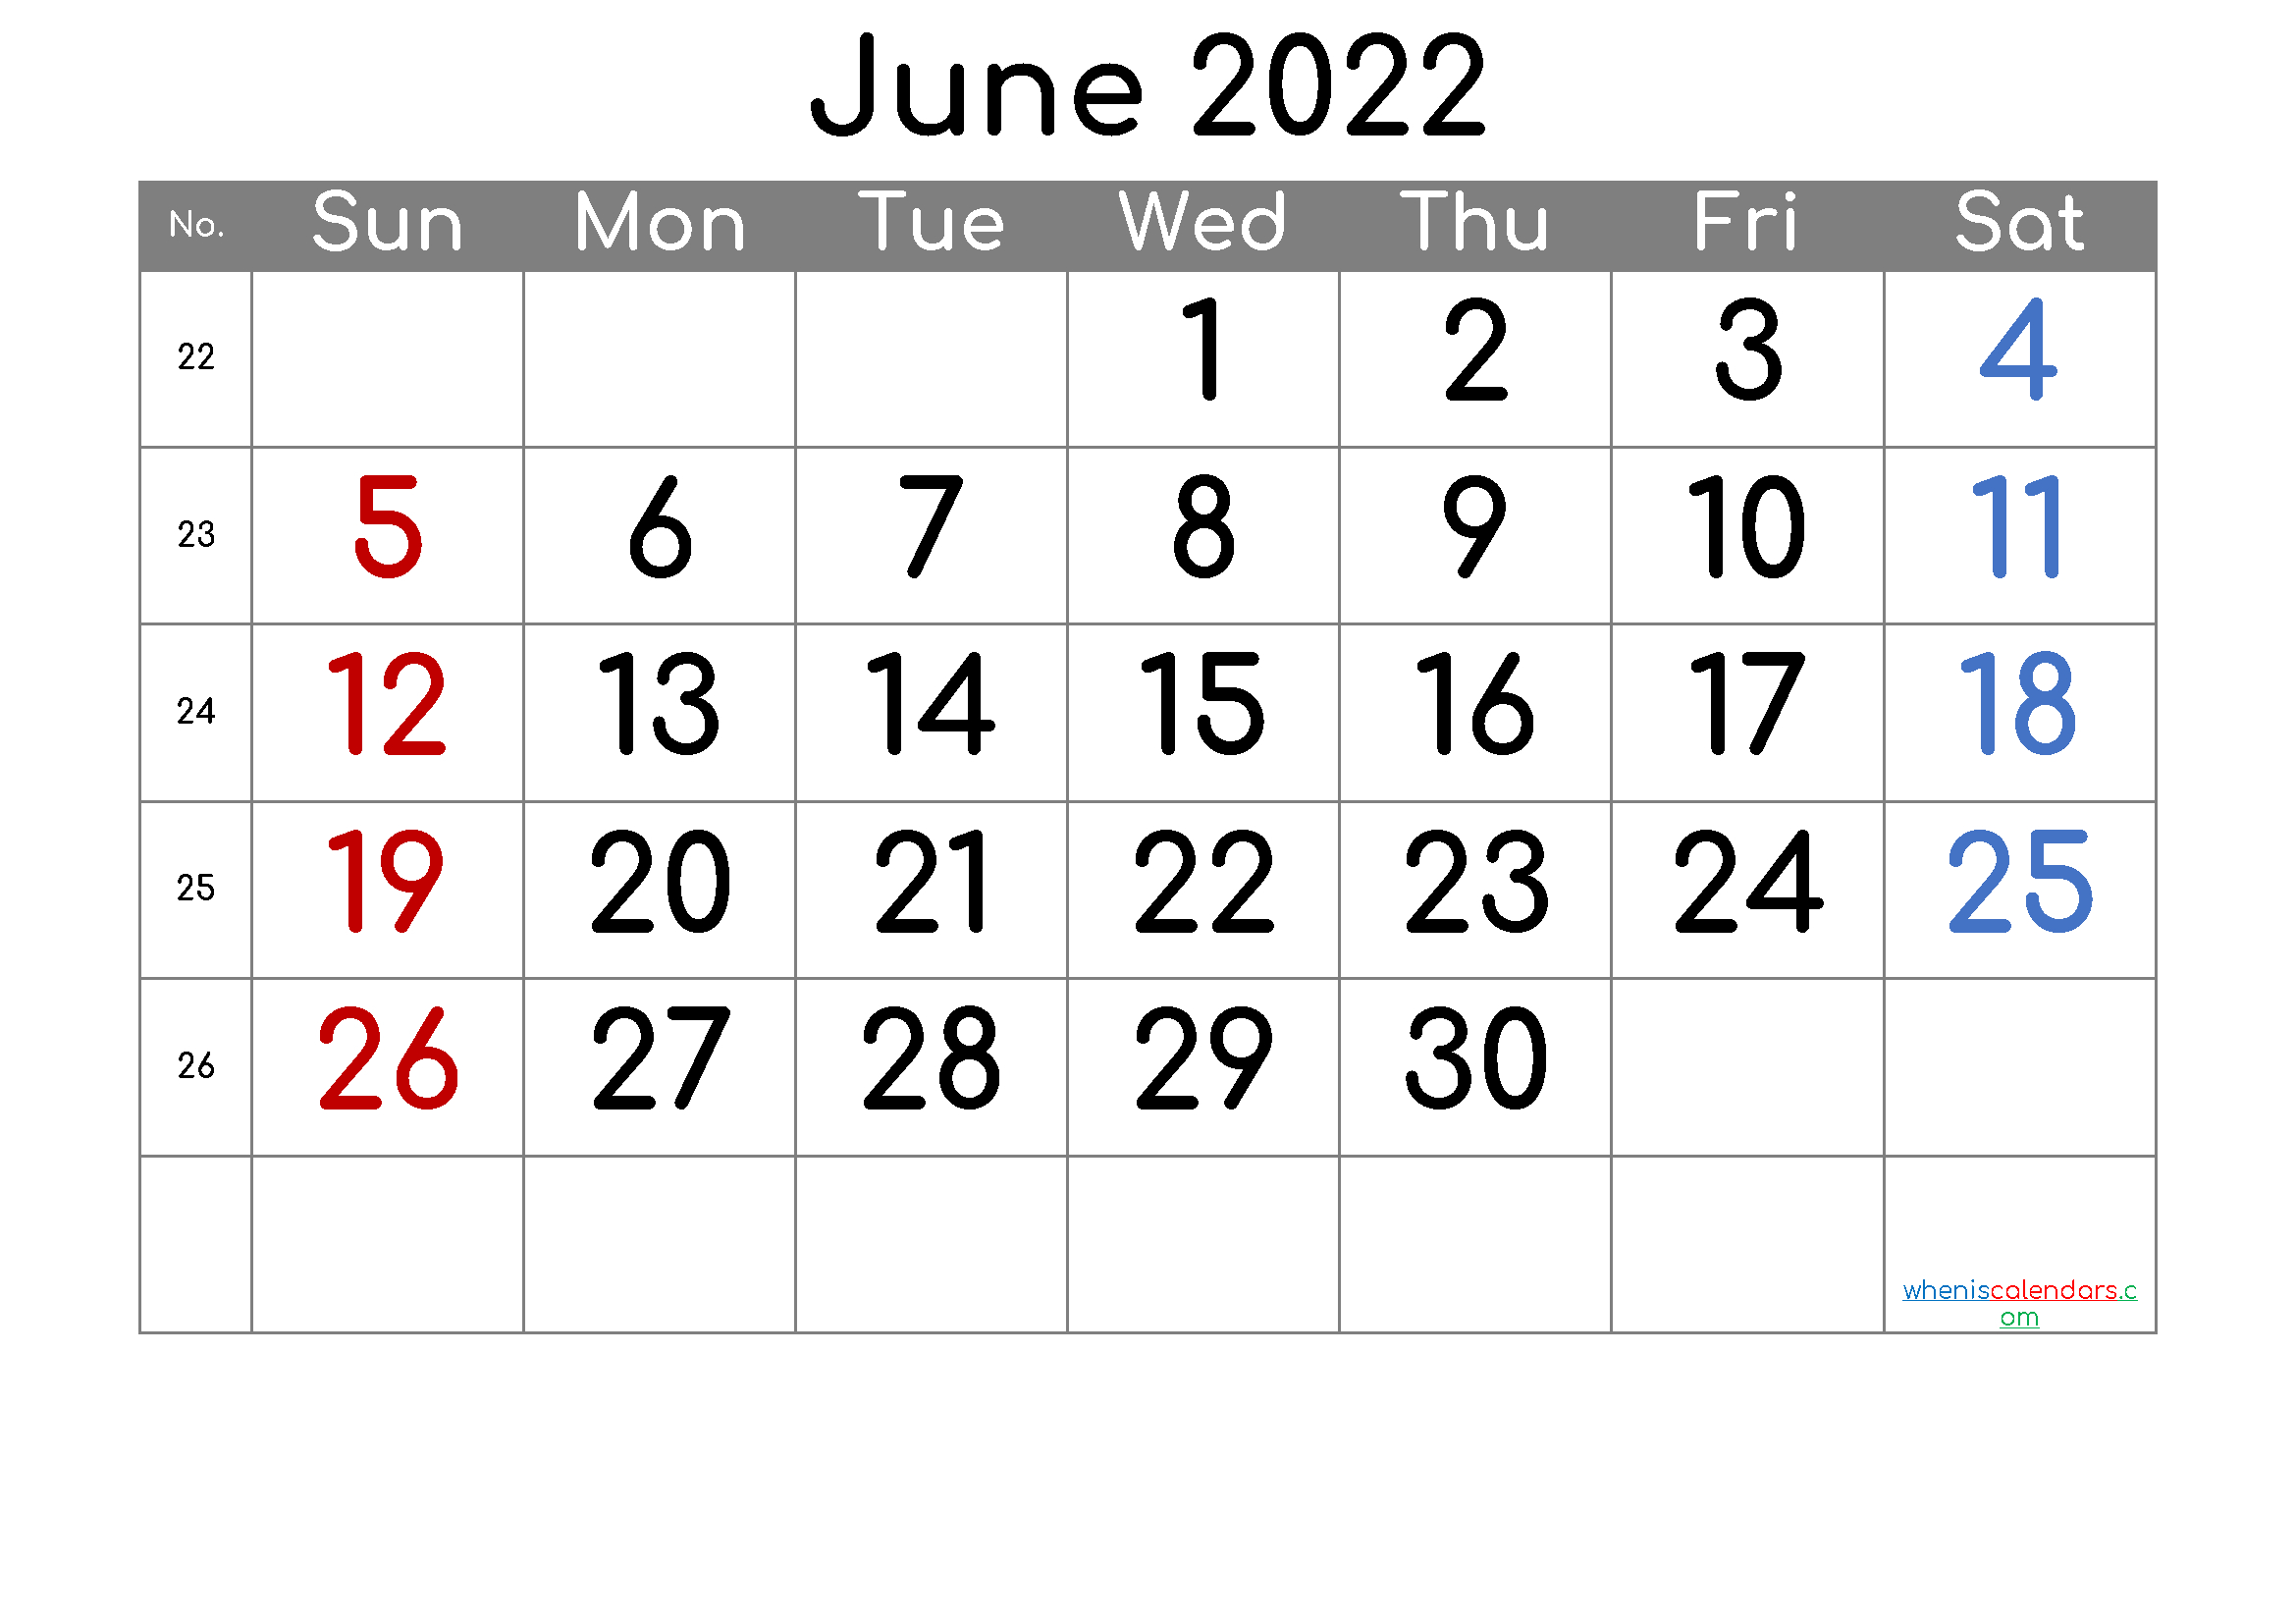 June 2022 Printable Calendar - 6 Templates | June Calendar  June 2022 Calendar Printable